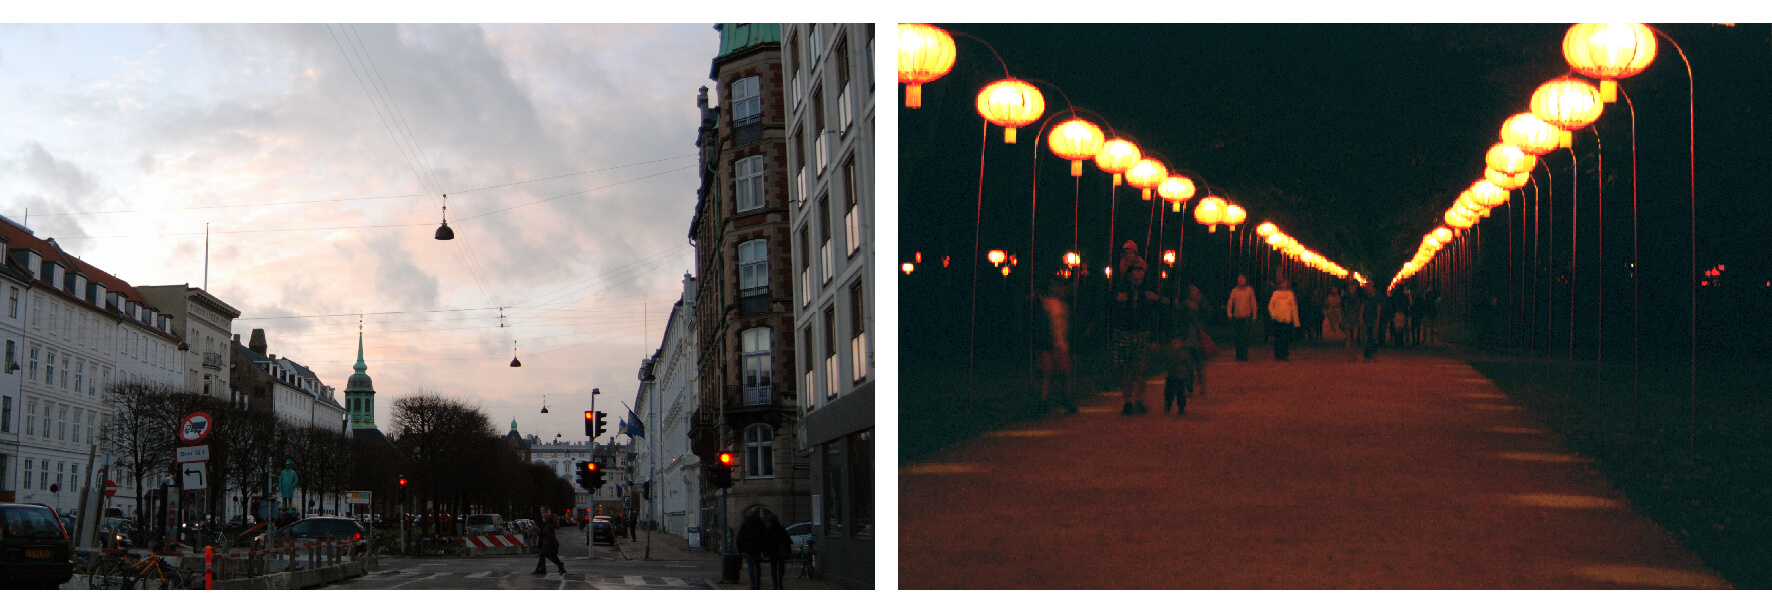 Il. 3: Przykłady wykorzystania światła do budowania stropu miejskiego wnętrza krajobrazowego. Po lewej stronie – drogowe oprawy oświetleniowe wraz z naciągami, a także światło słoneczne ukazujące nieboskłon współtworzą strop ulicy w Kopenhadze (fot. K. Wlazło-Malinowska 12.11.2010). Po prawej stronie – oświetlenie głównej alei kompozycyjnej w parku Tivoli w Kopenhadze wzmacnia wrażenie domknięcia wnętrza stropem światła (fot. K. Wlazło-Malinowska 15.11.2010). Źródło: opracowanie własne.